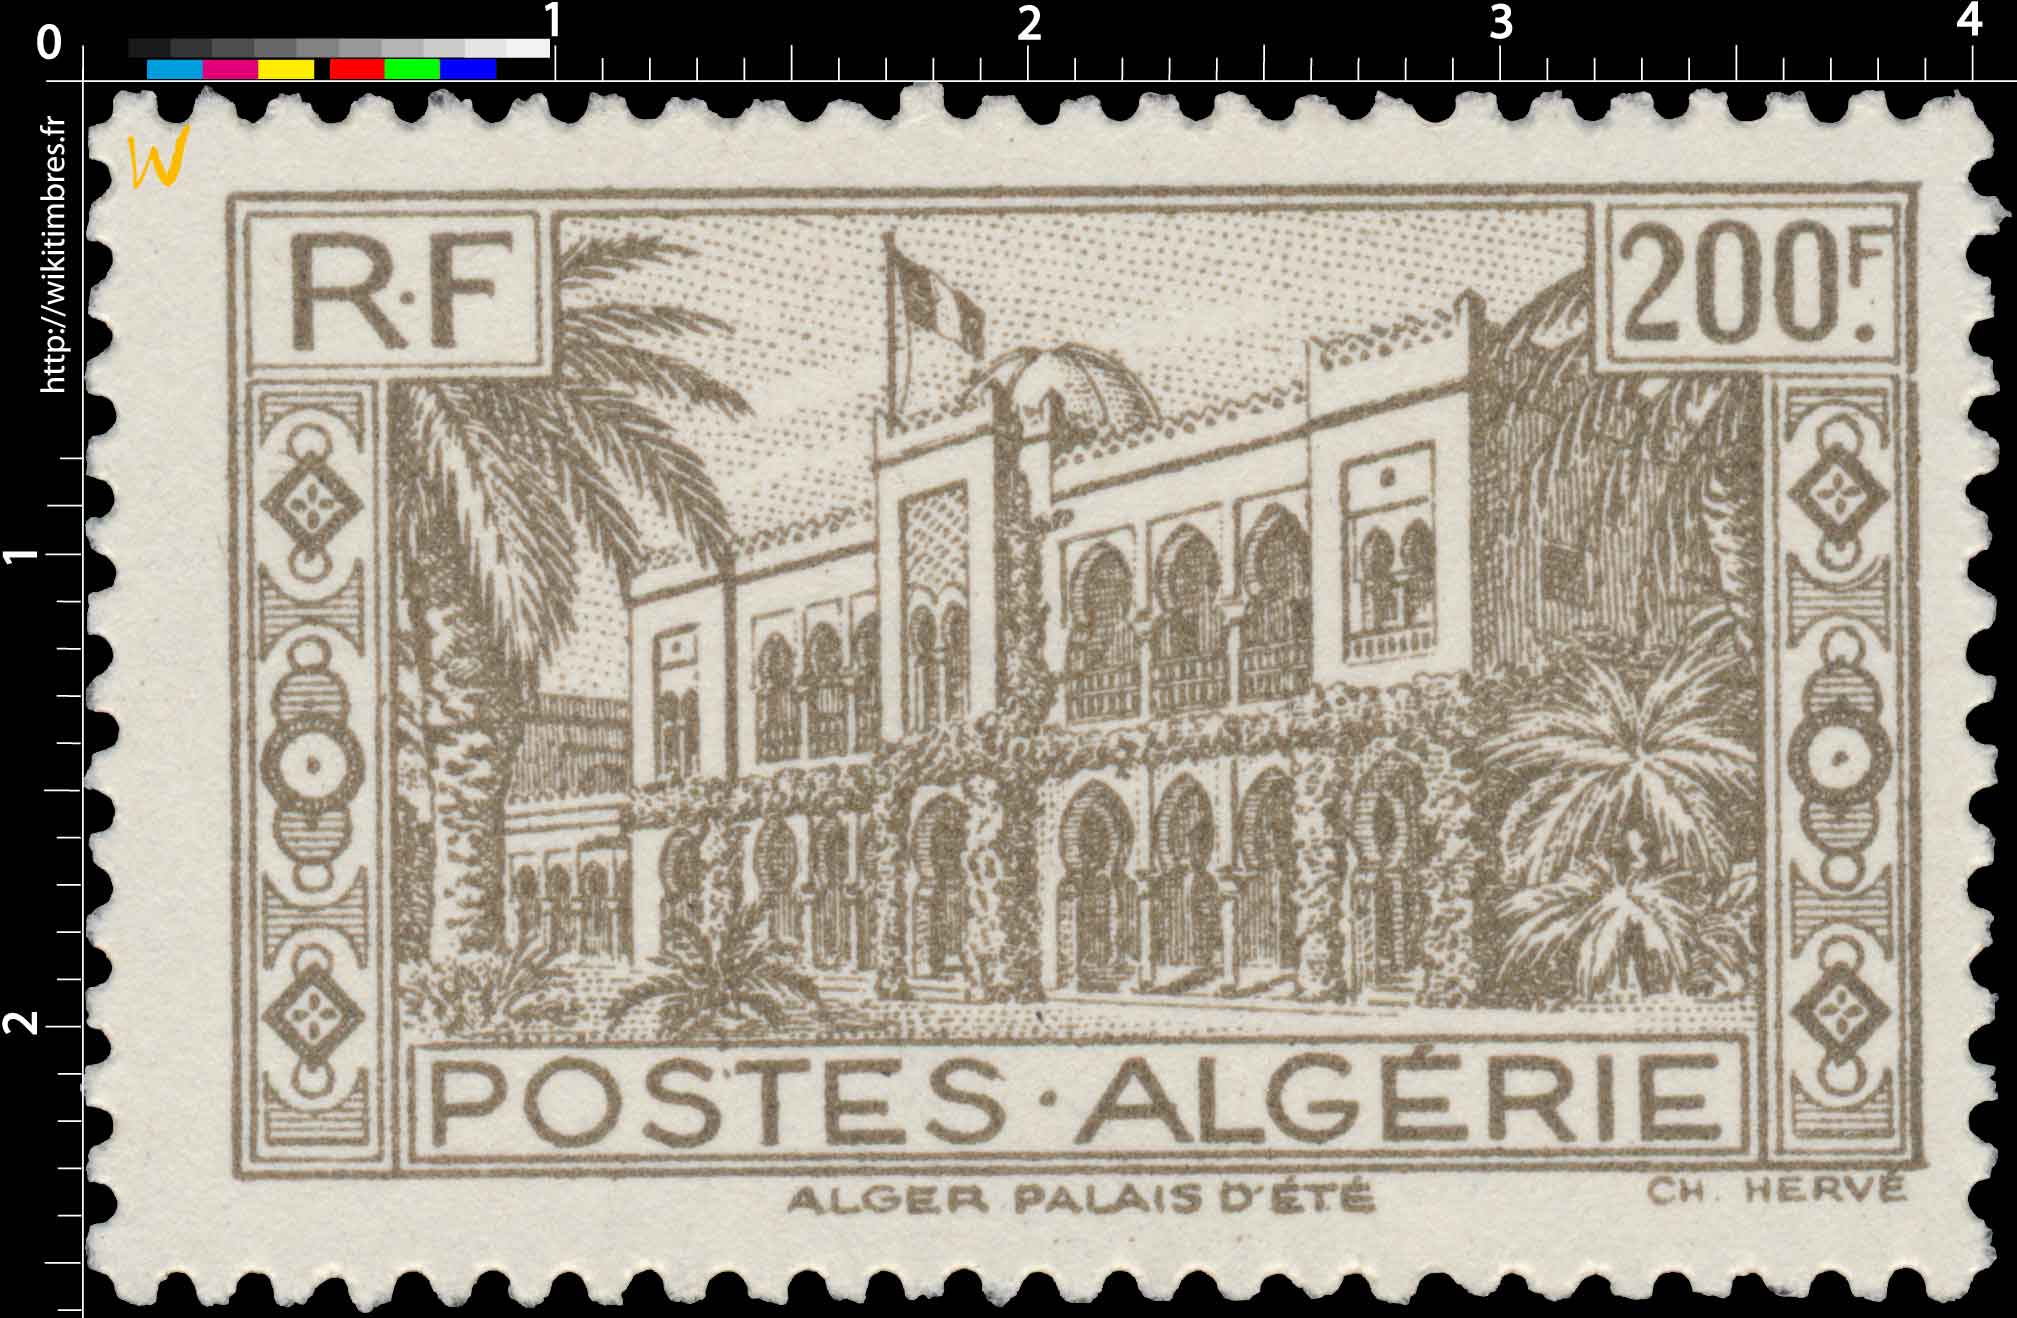 Algérie - Palais d'été à Alger